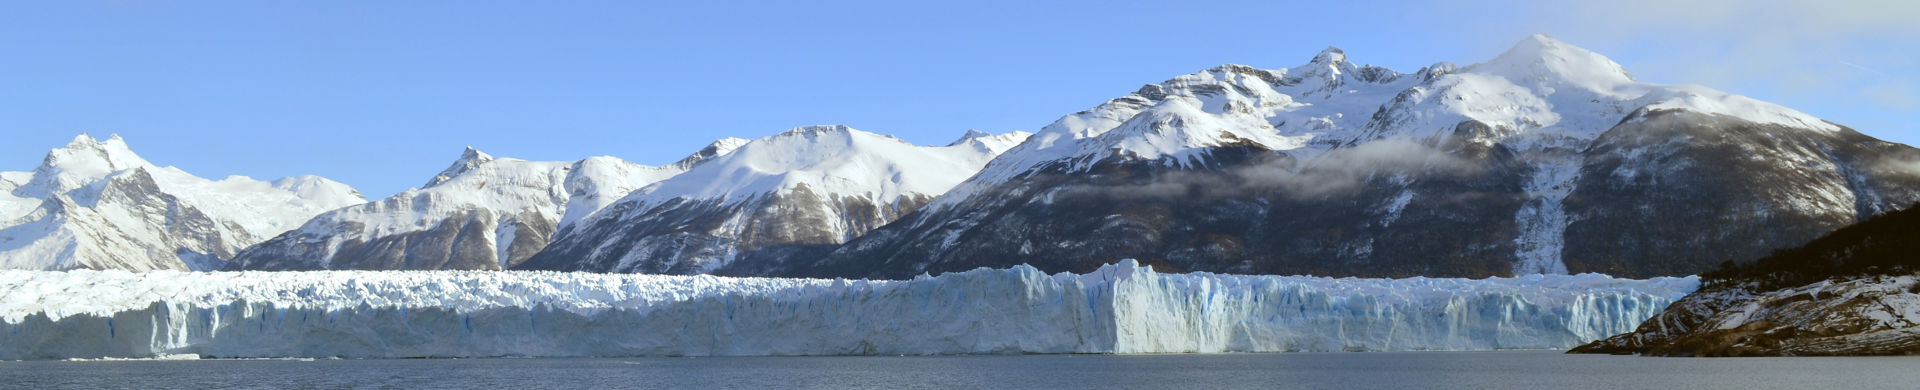 WWW KL Gletsjer CCO Unsplash @pixabay